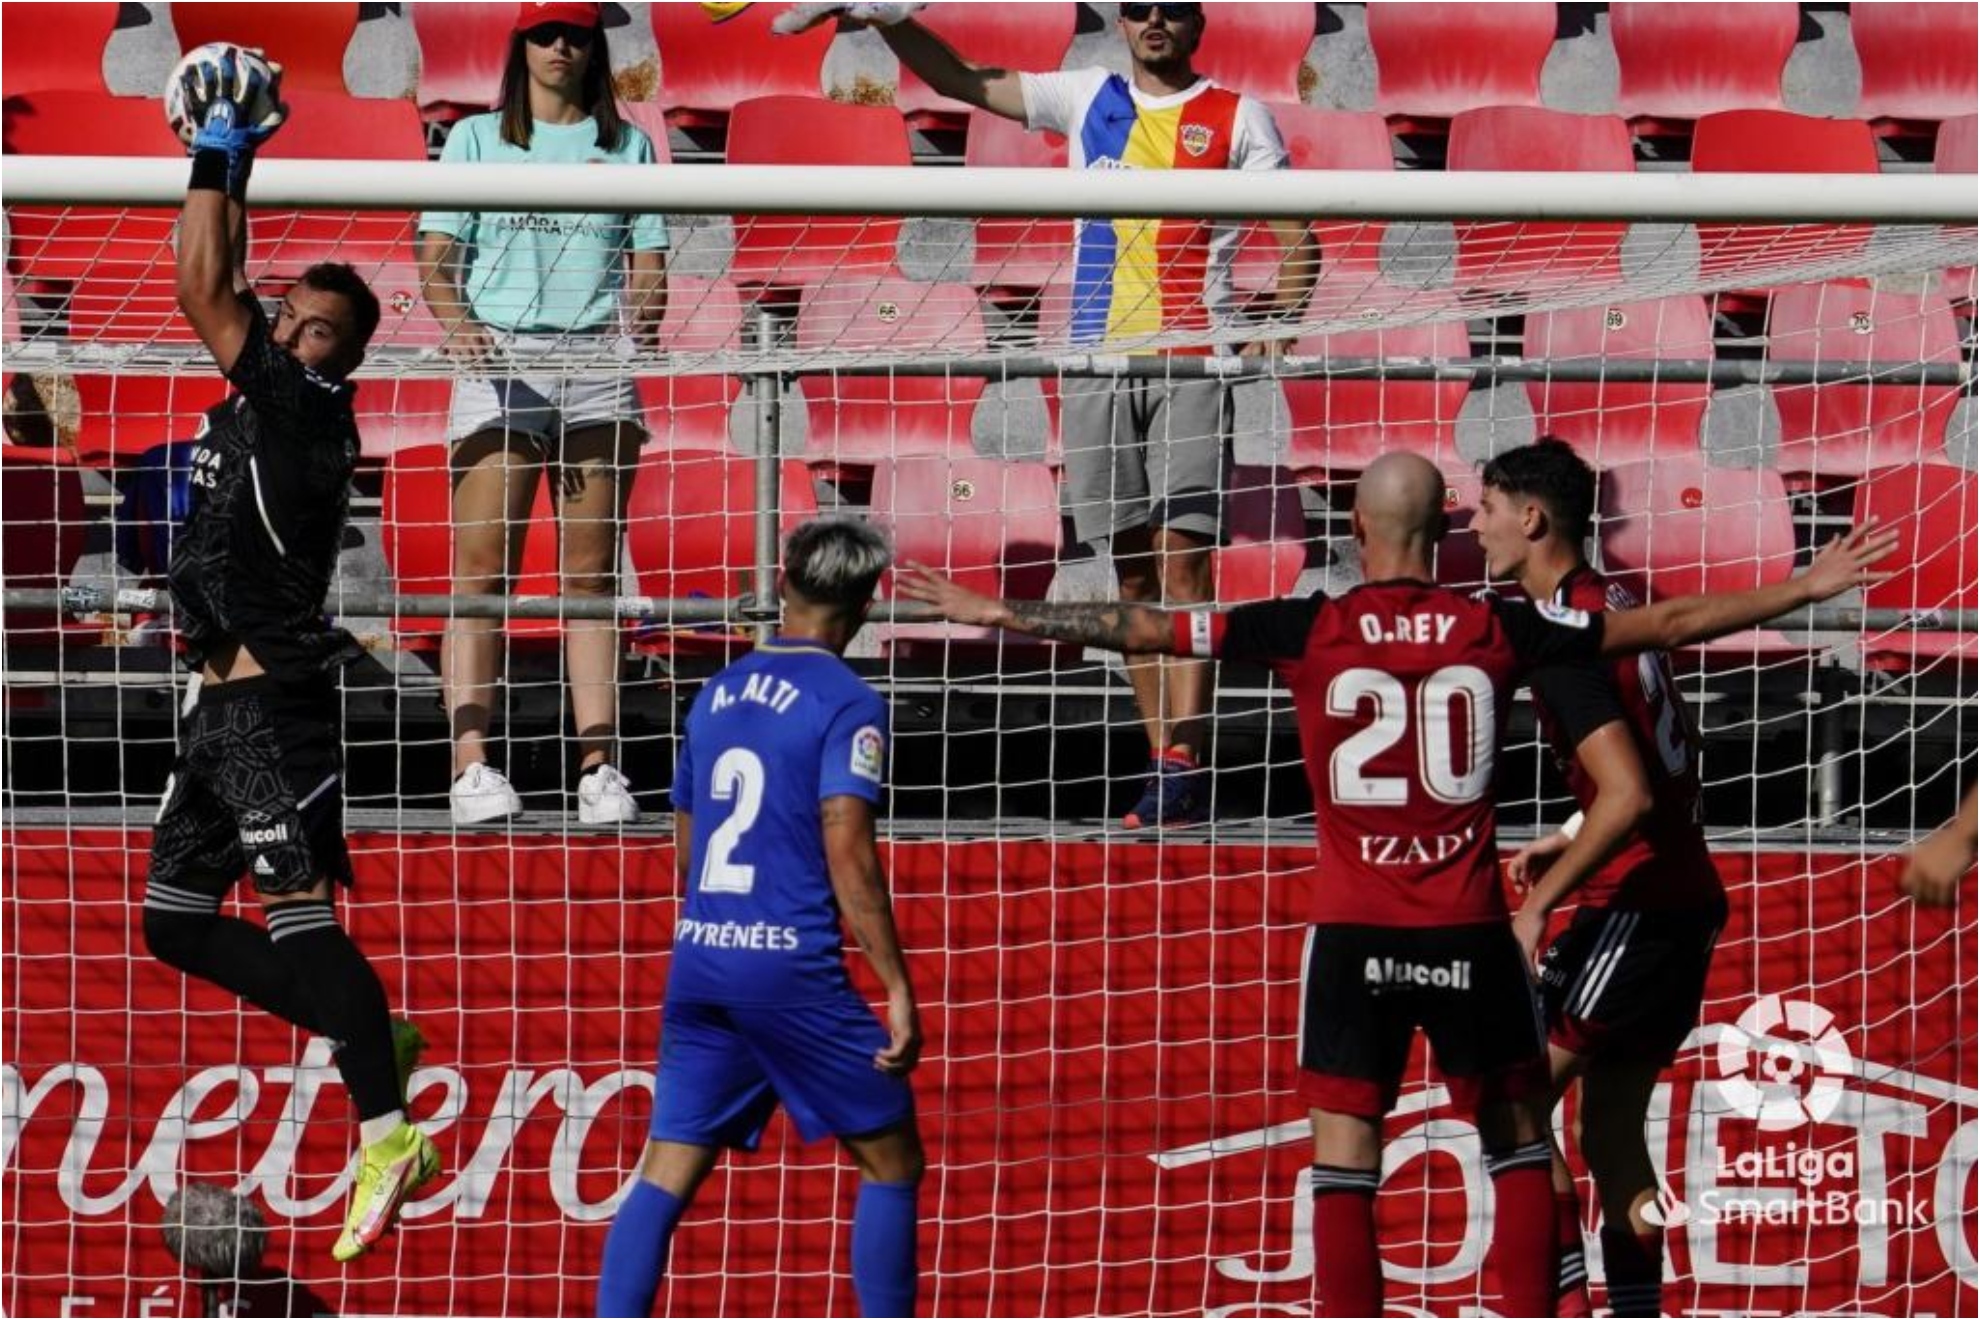 Alfonso Herrero agarra el balón en un lance del partido. /LALIGA